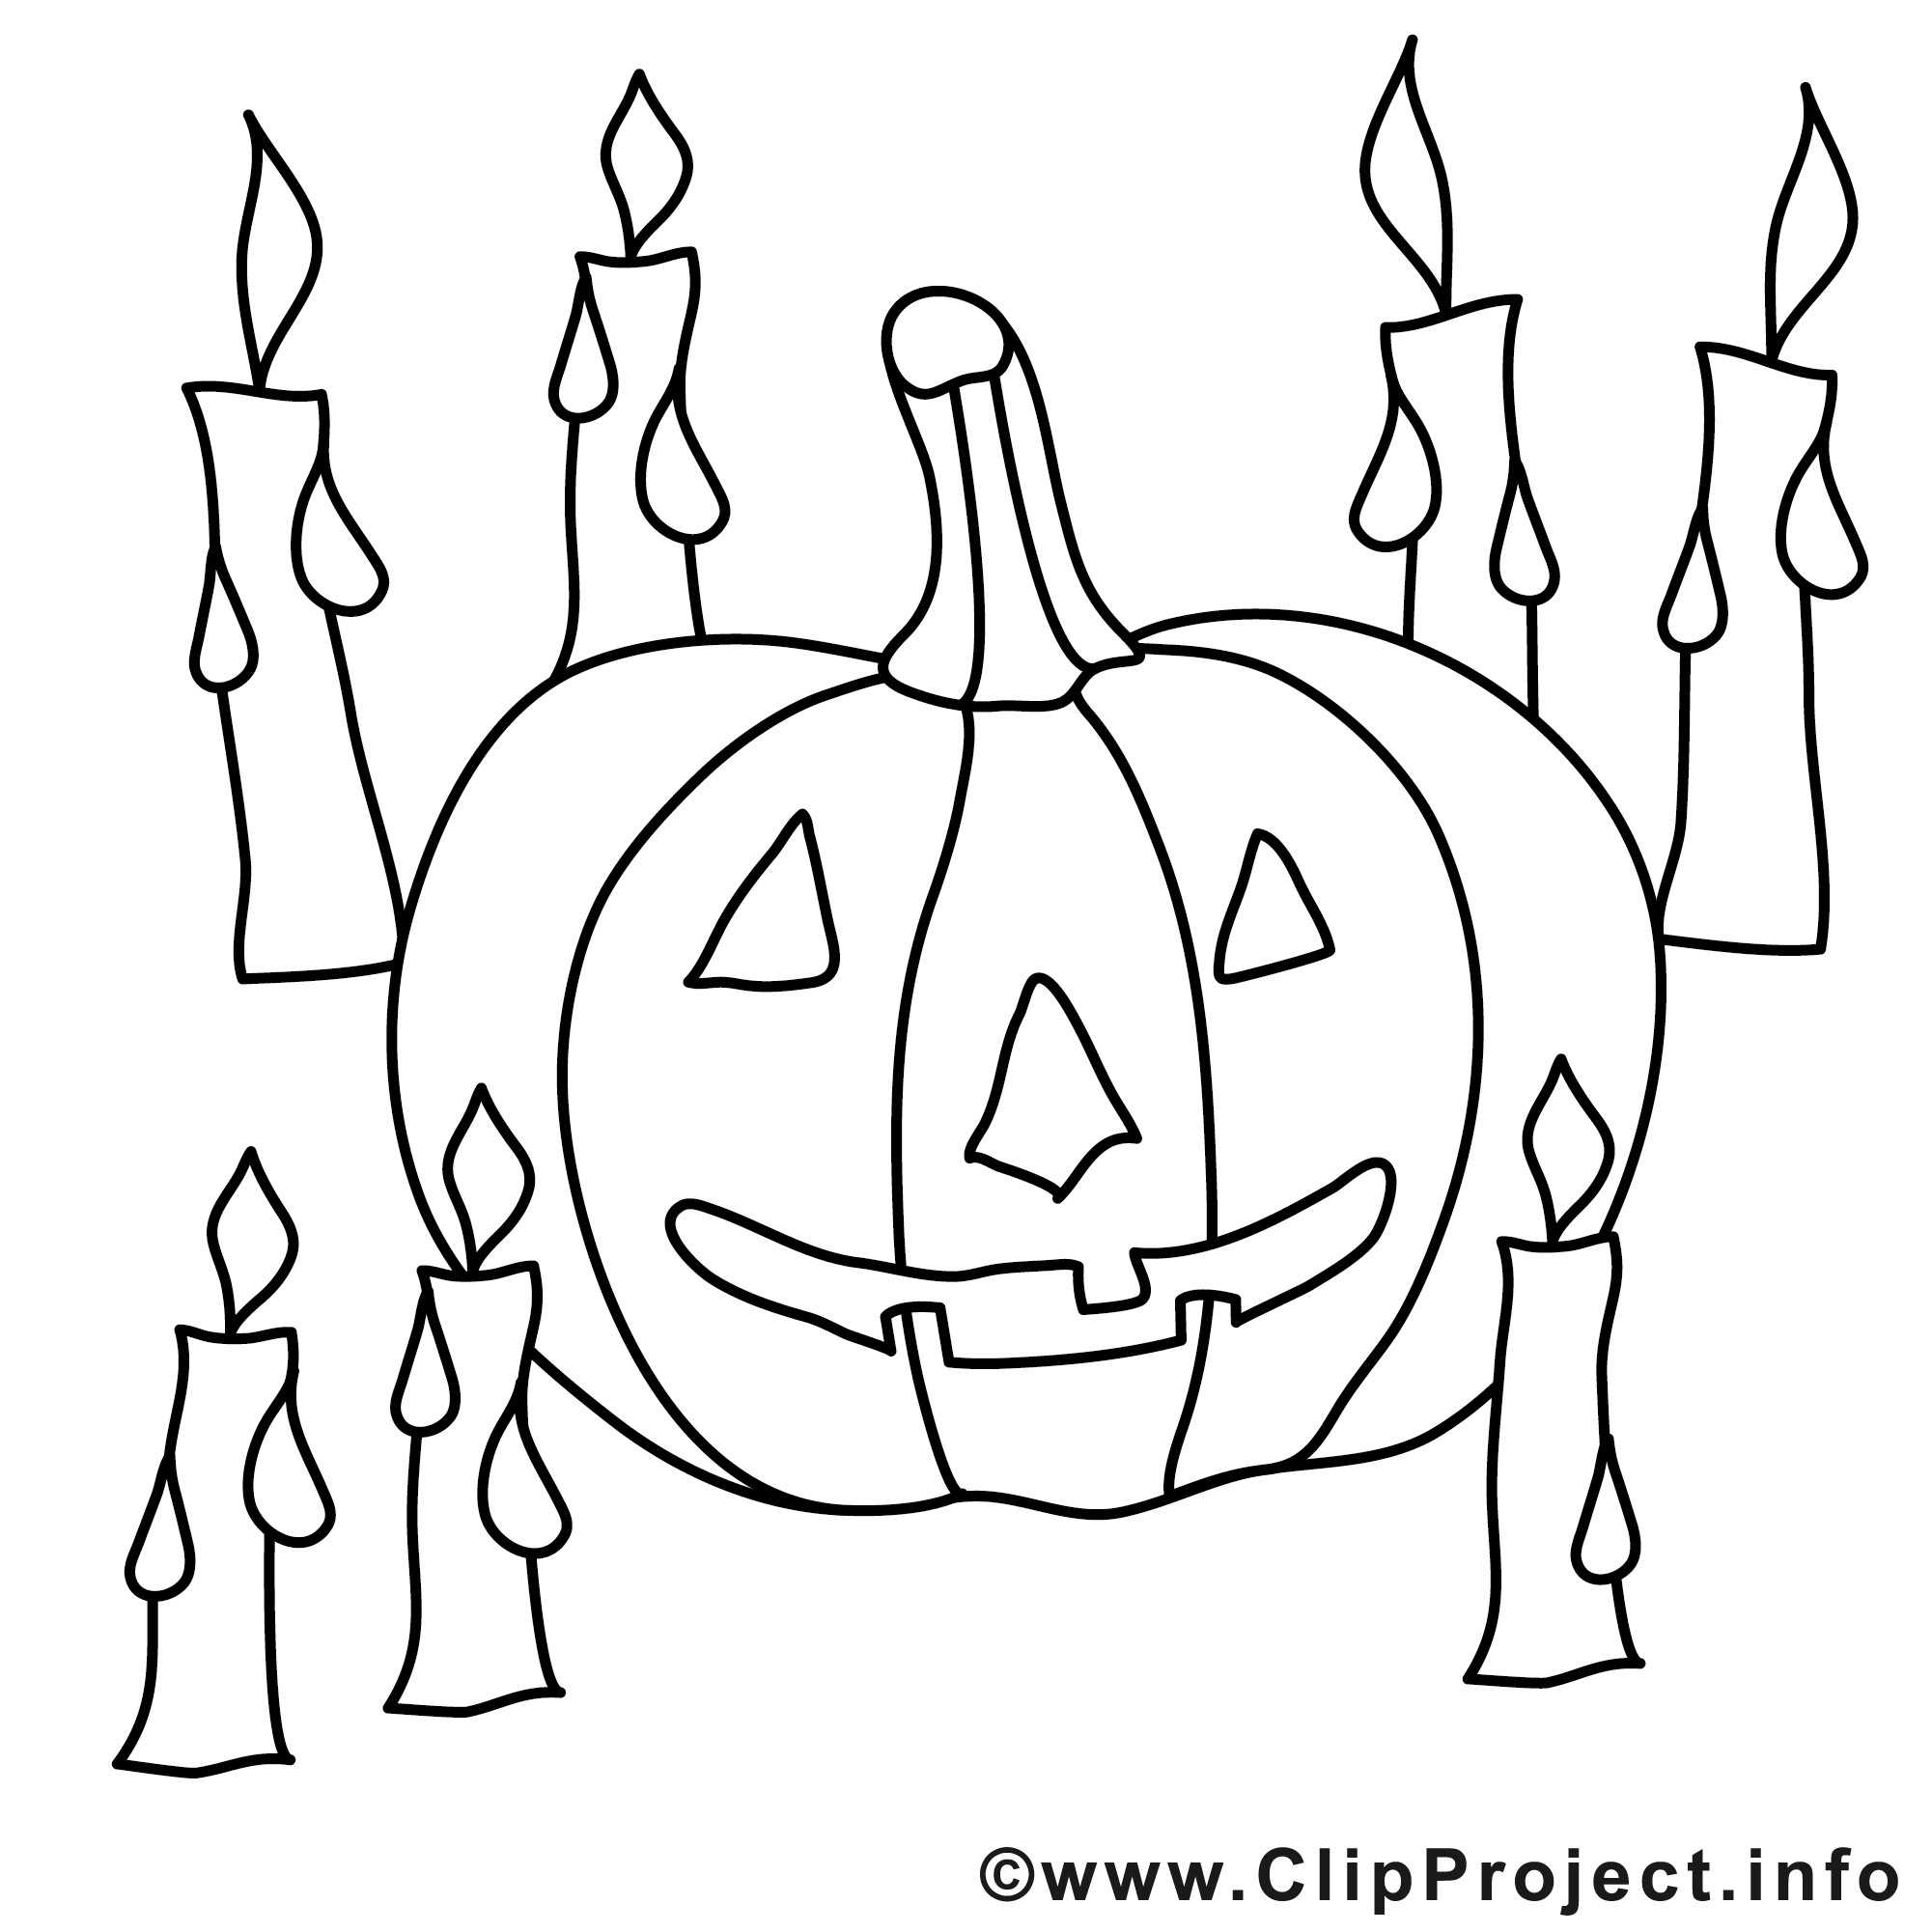 Malvorlagen Kostenlos Zum Ausdrucken
 Halloween Malvorlage kostenlos mit Kerzen und Kuerbis